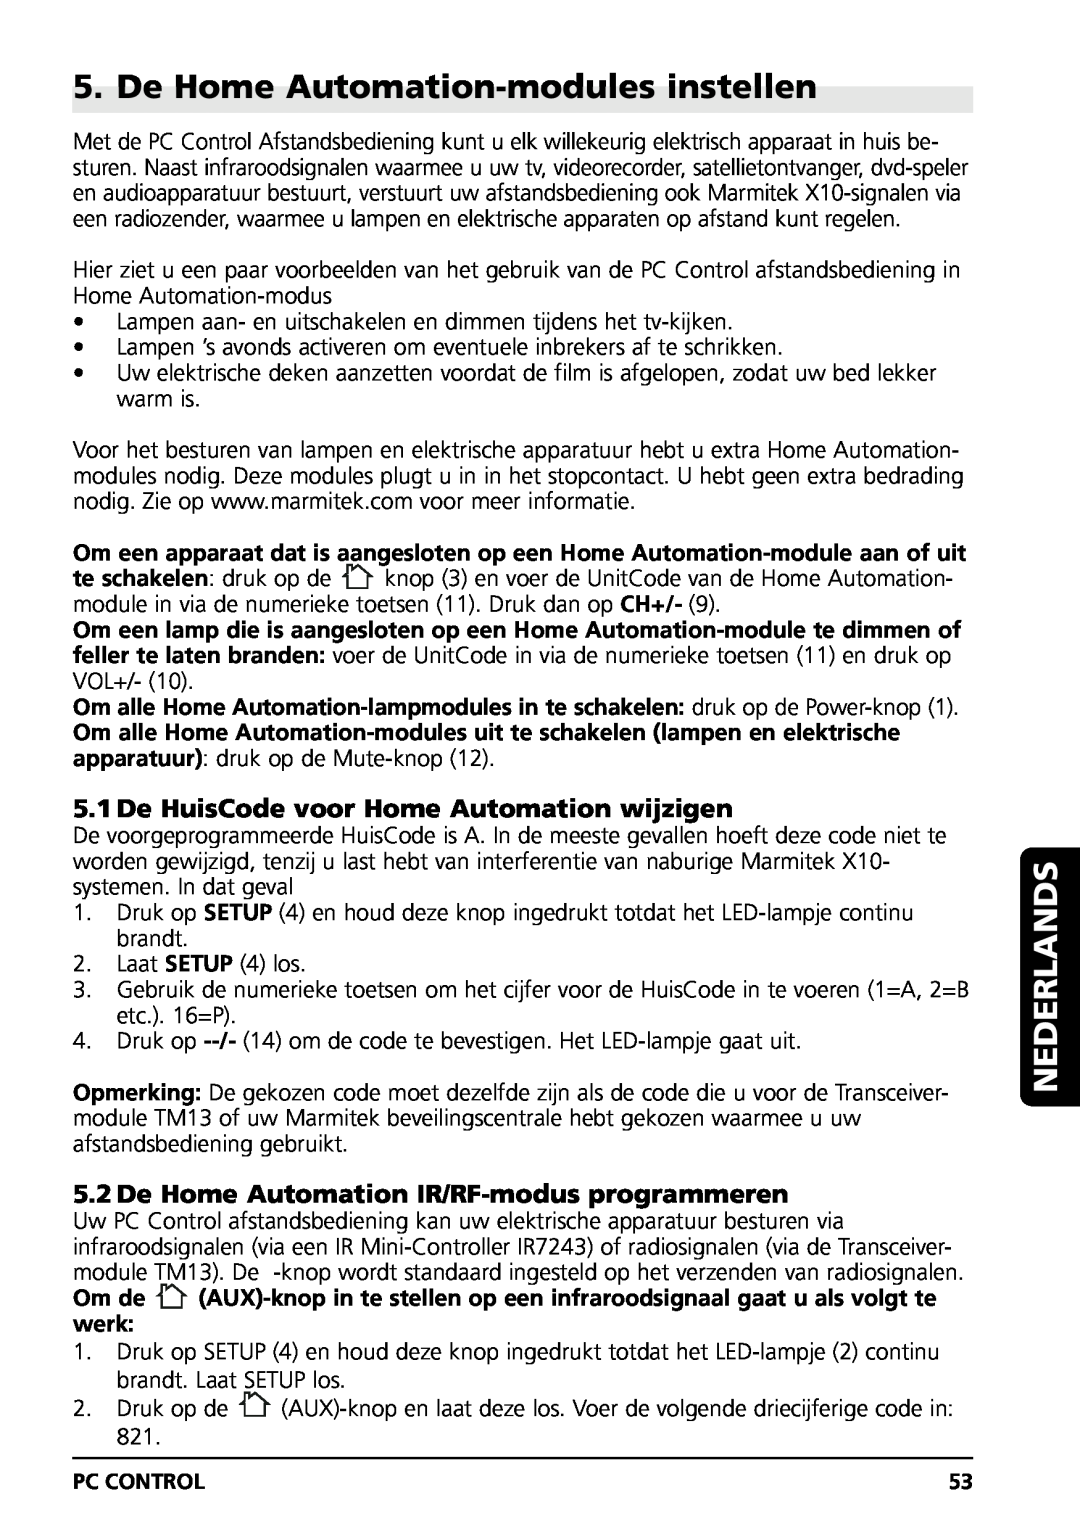 Marmitek PC CONTROL De Home Automation-modules instellen, De HuisCode voor Home Automation wijzigen, Nederlands 